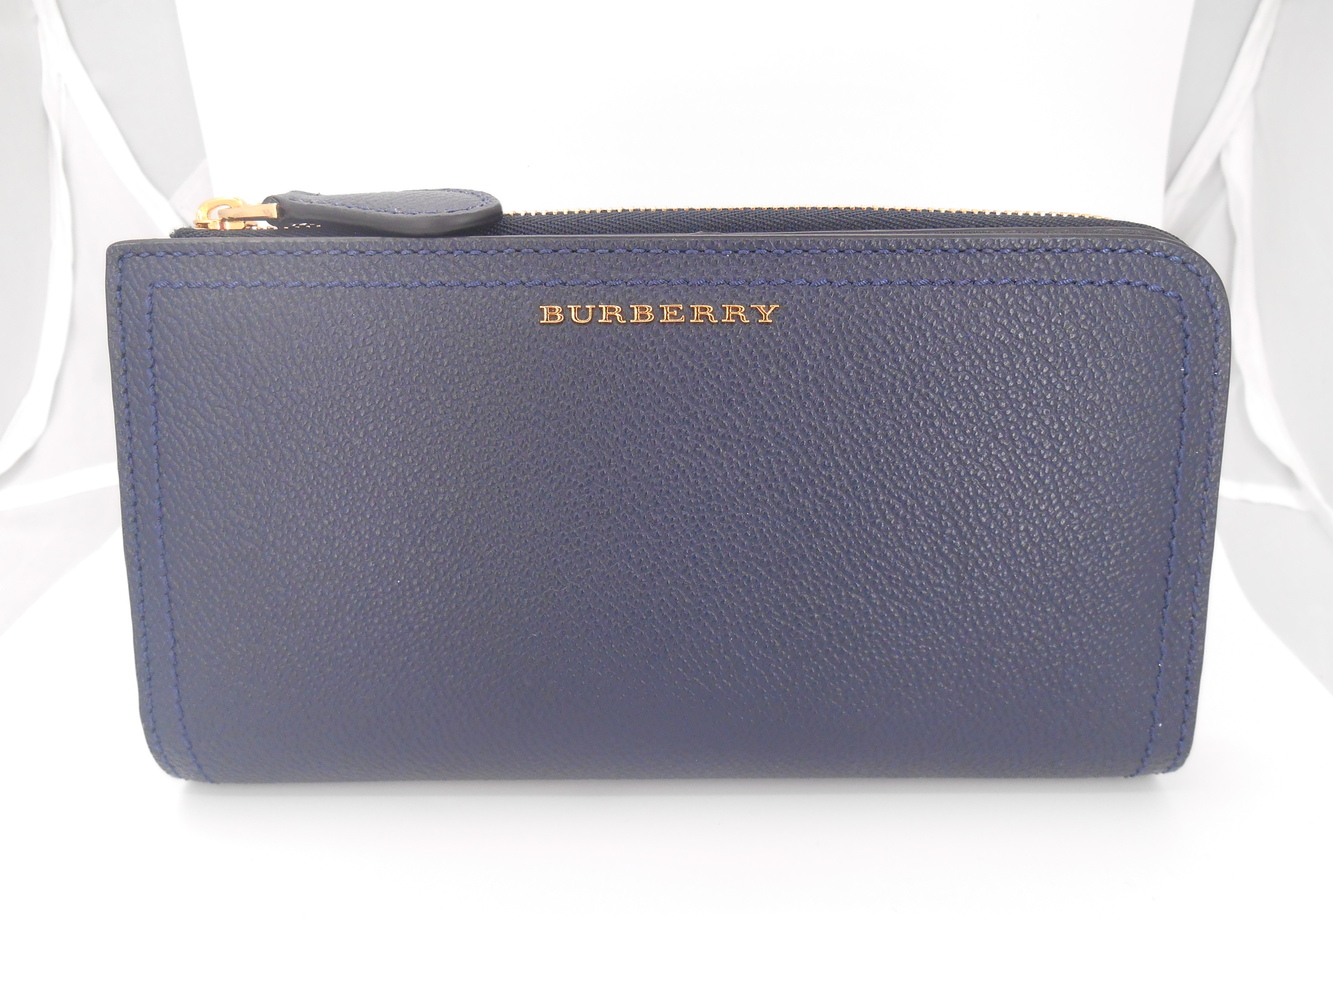 Burberry Alvington Large Leather Wallet